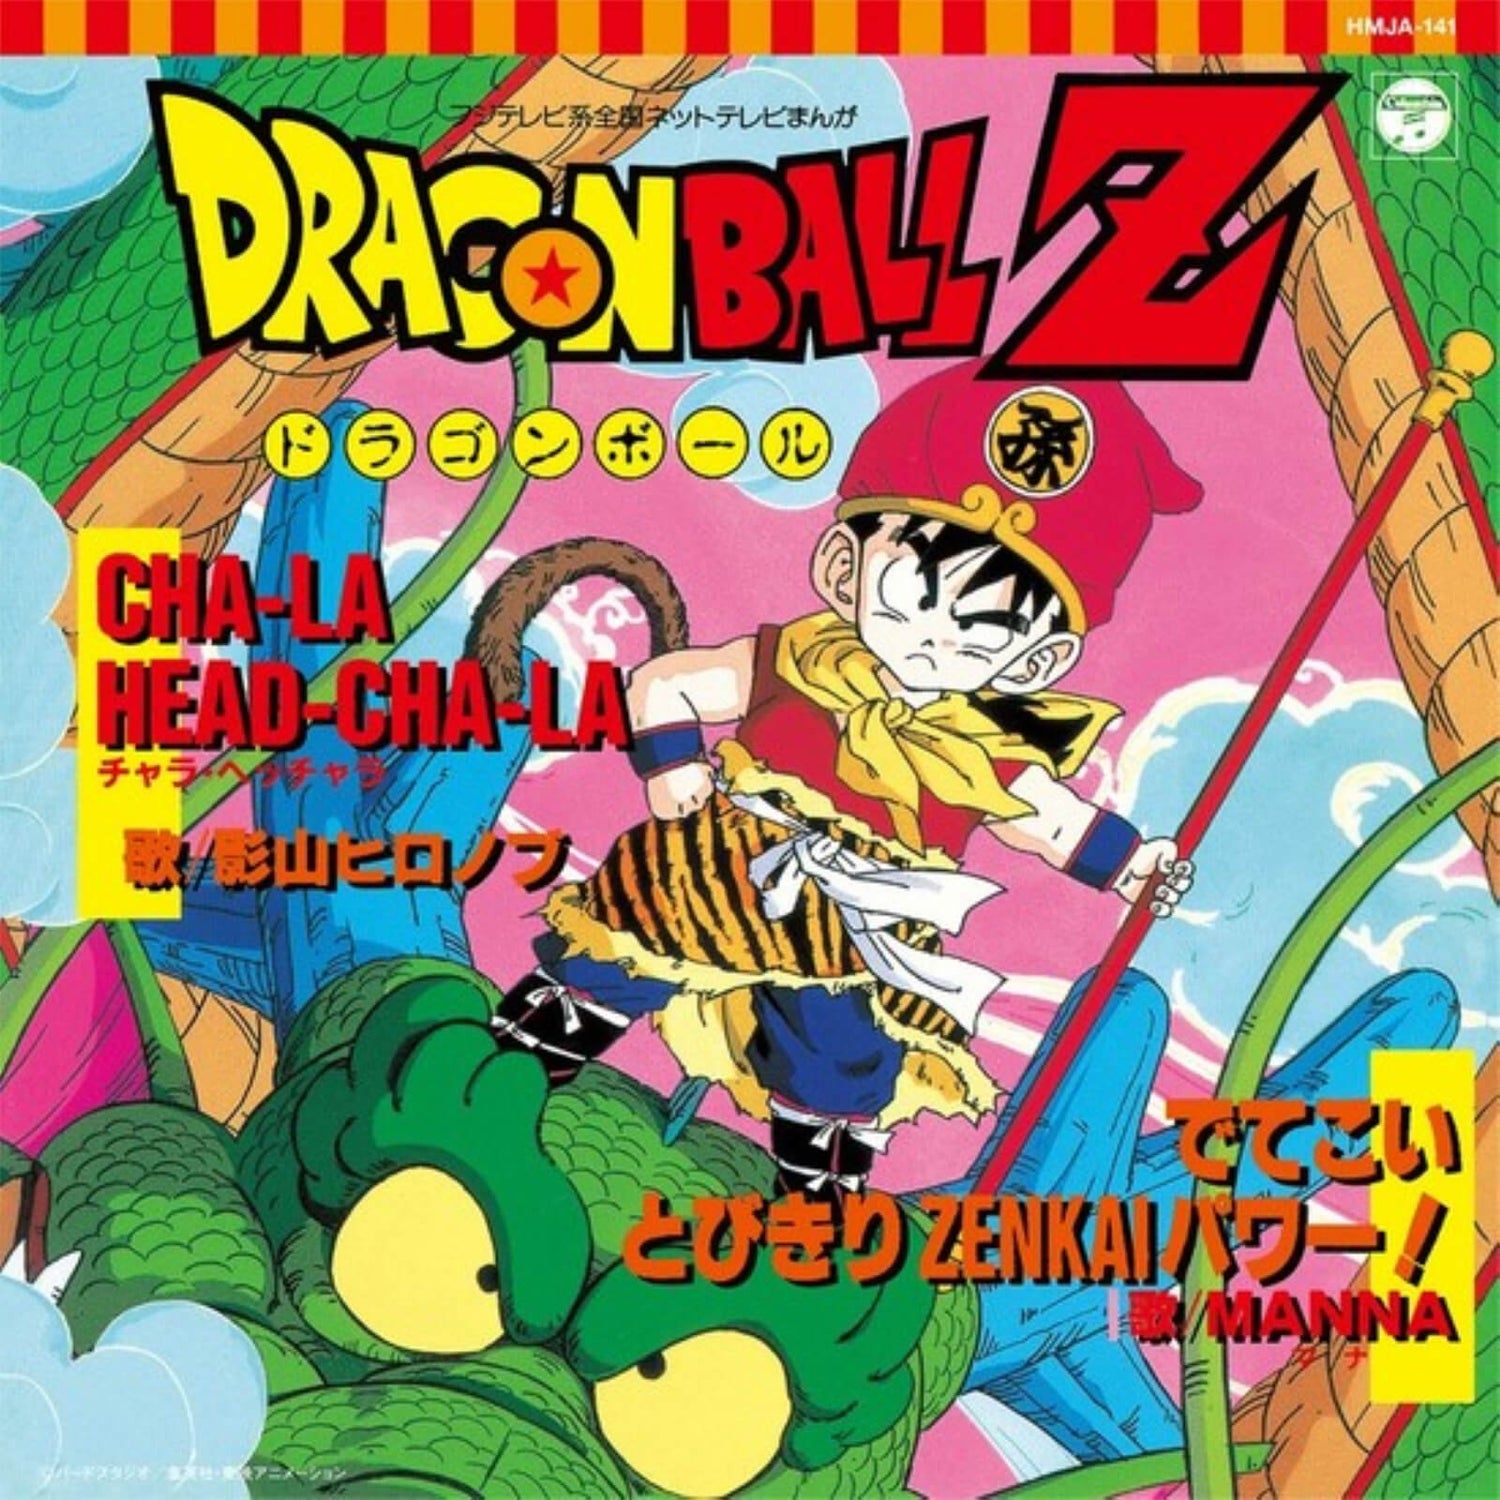 Dragon Ball Z - CHA-LA HEAD-CHA-LA b/w Detekoi Tobikiri ZENKAI Power! 7"